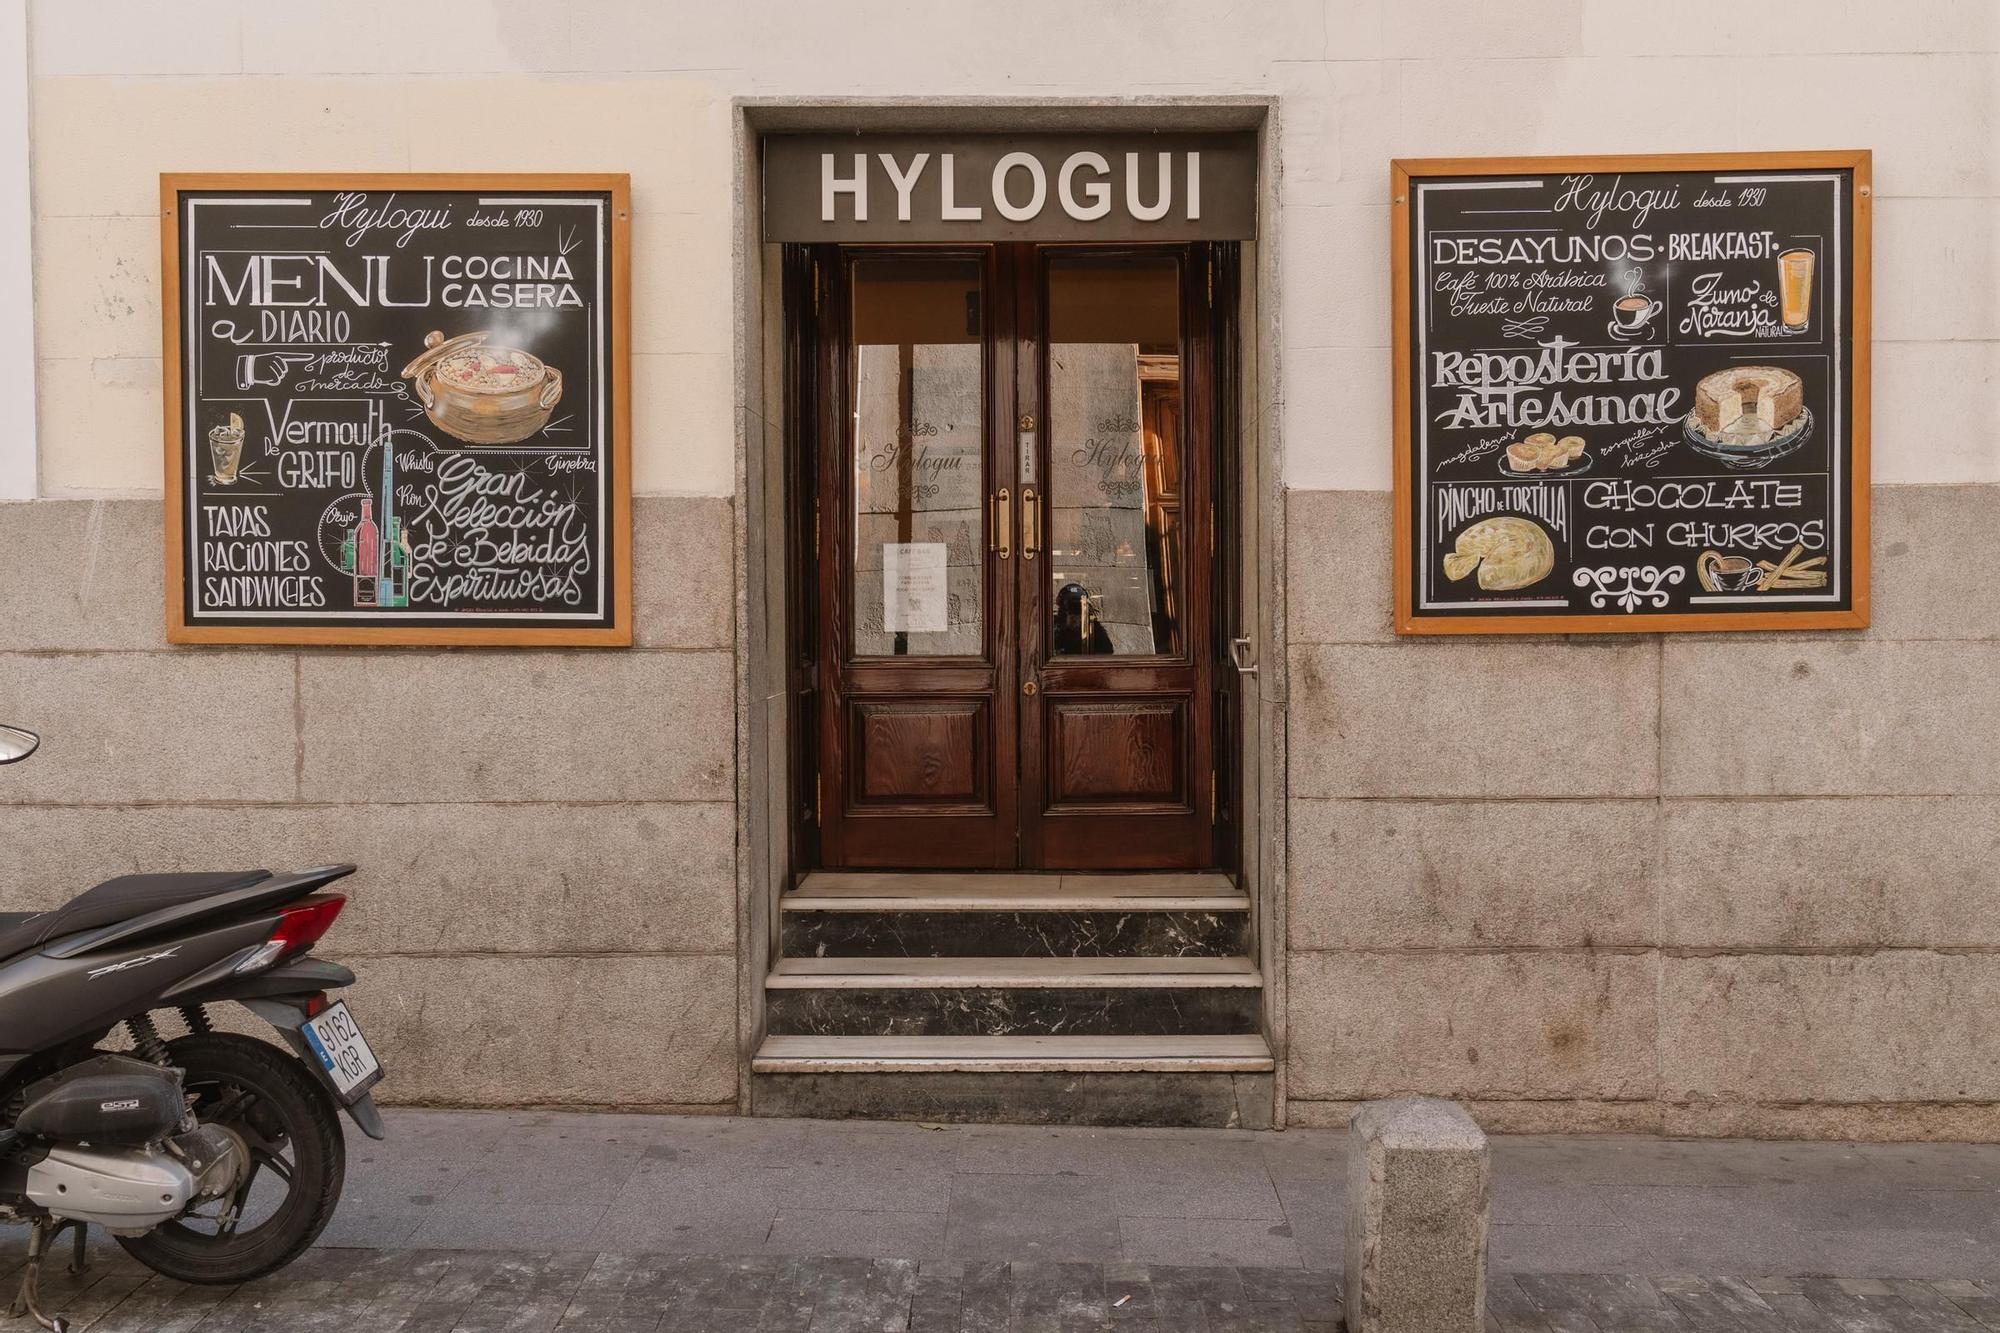 El restaurante Hylogui, en la calle Ventura de la Vega, sigue funcionando hoy en día.